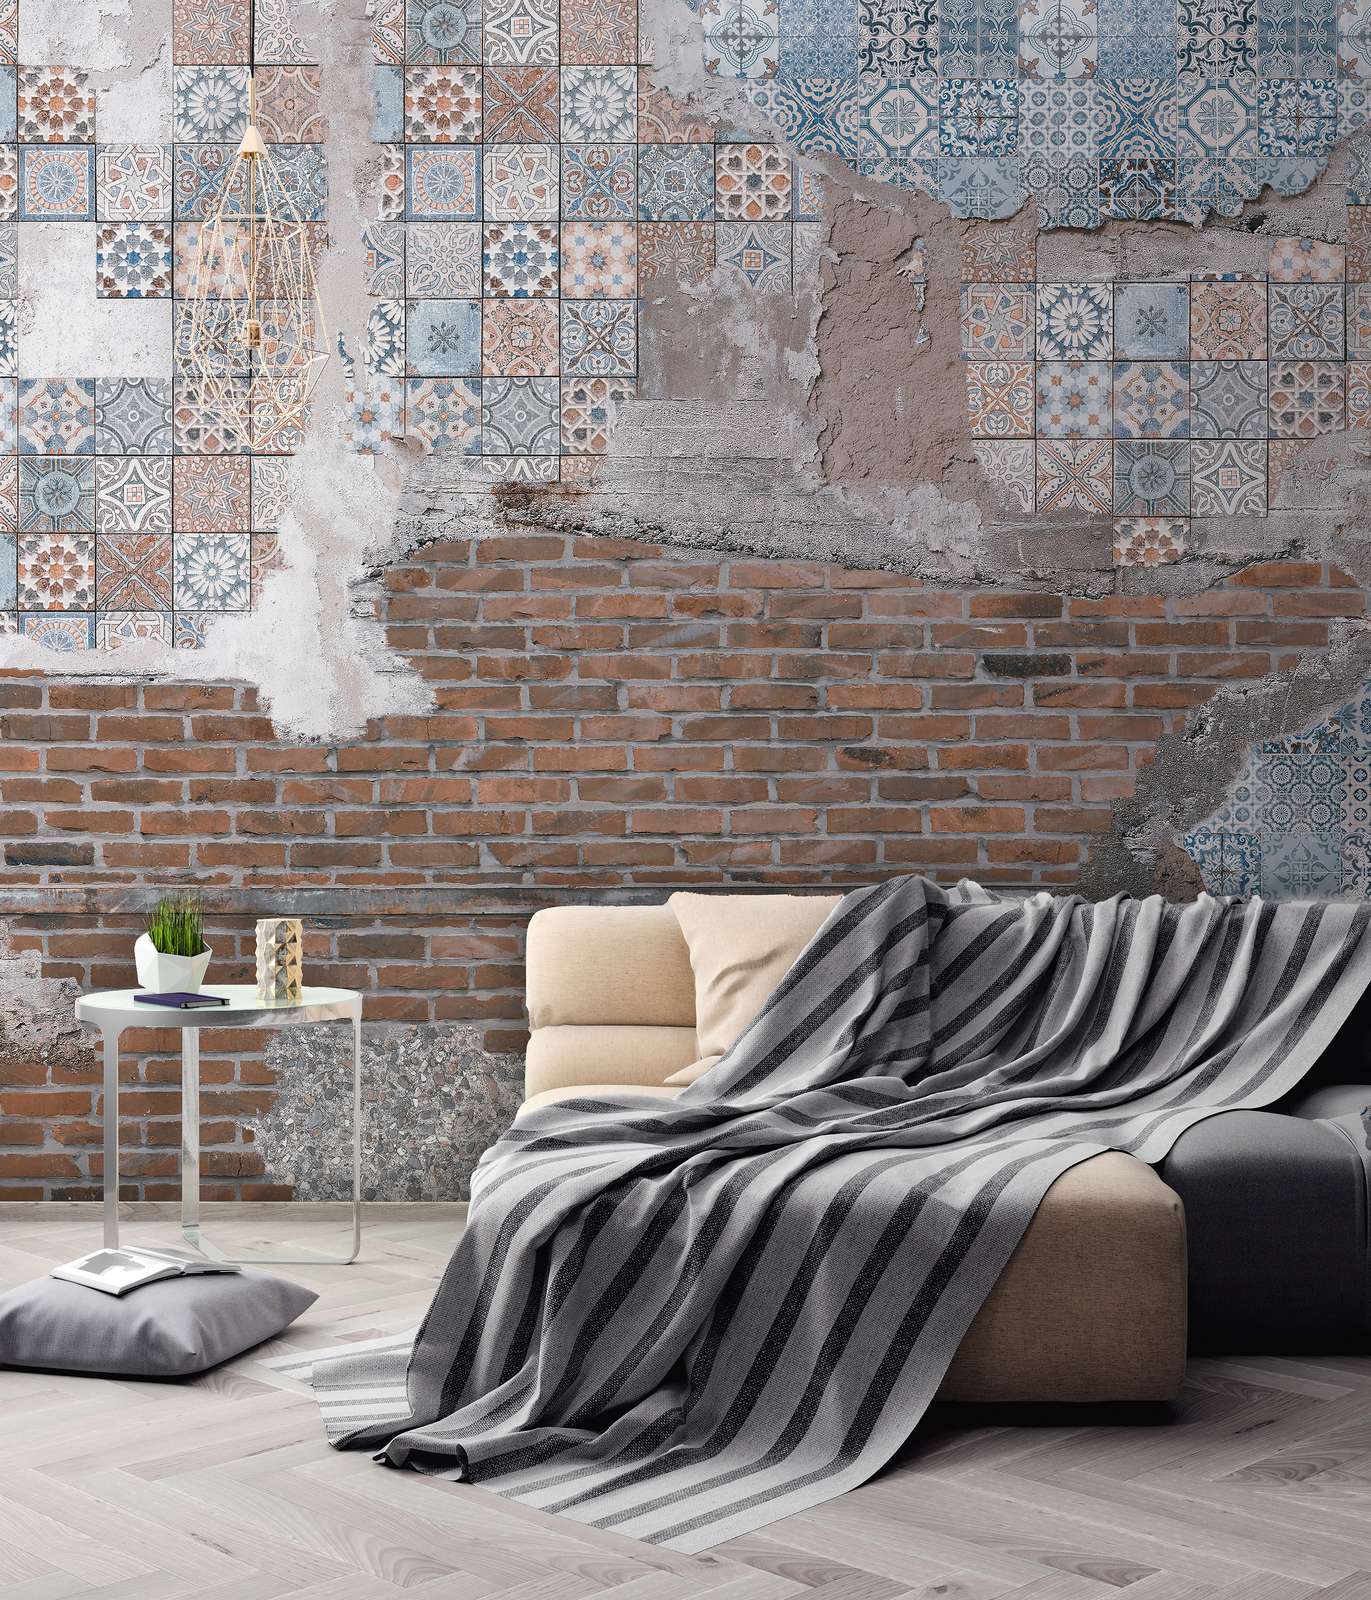             Bakstenen muur met gepleisterde mozaïeksteentjes Onderlaag behang - Bruin, Blauw, Grijs
        